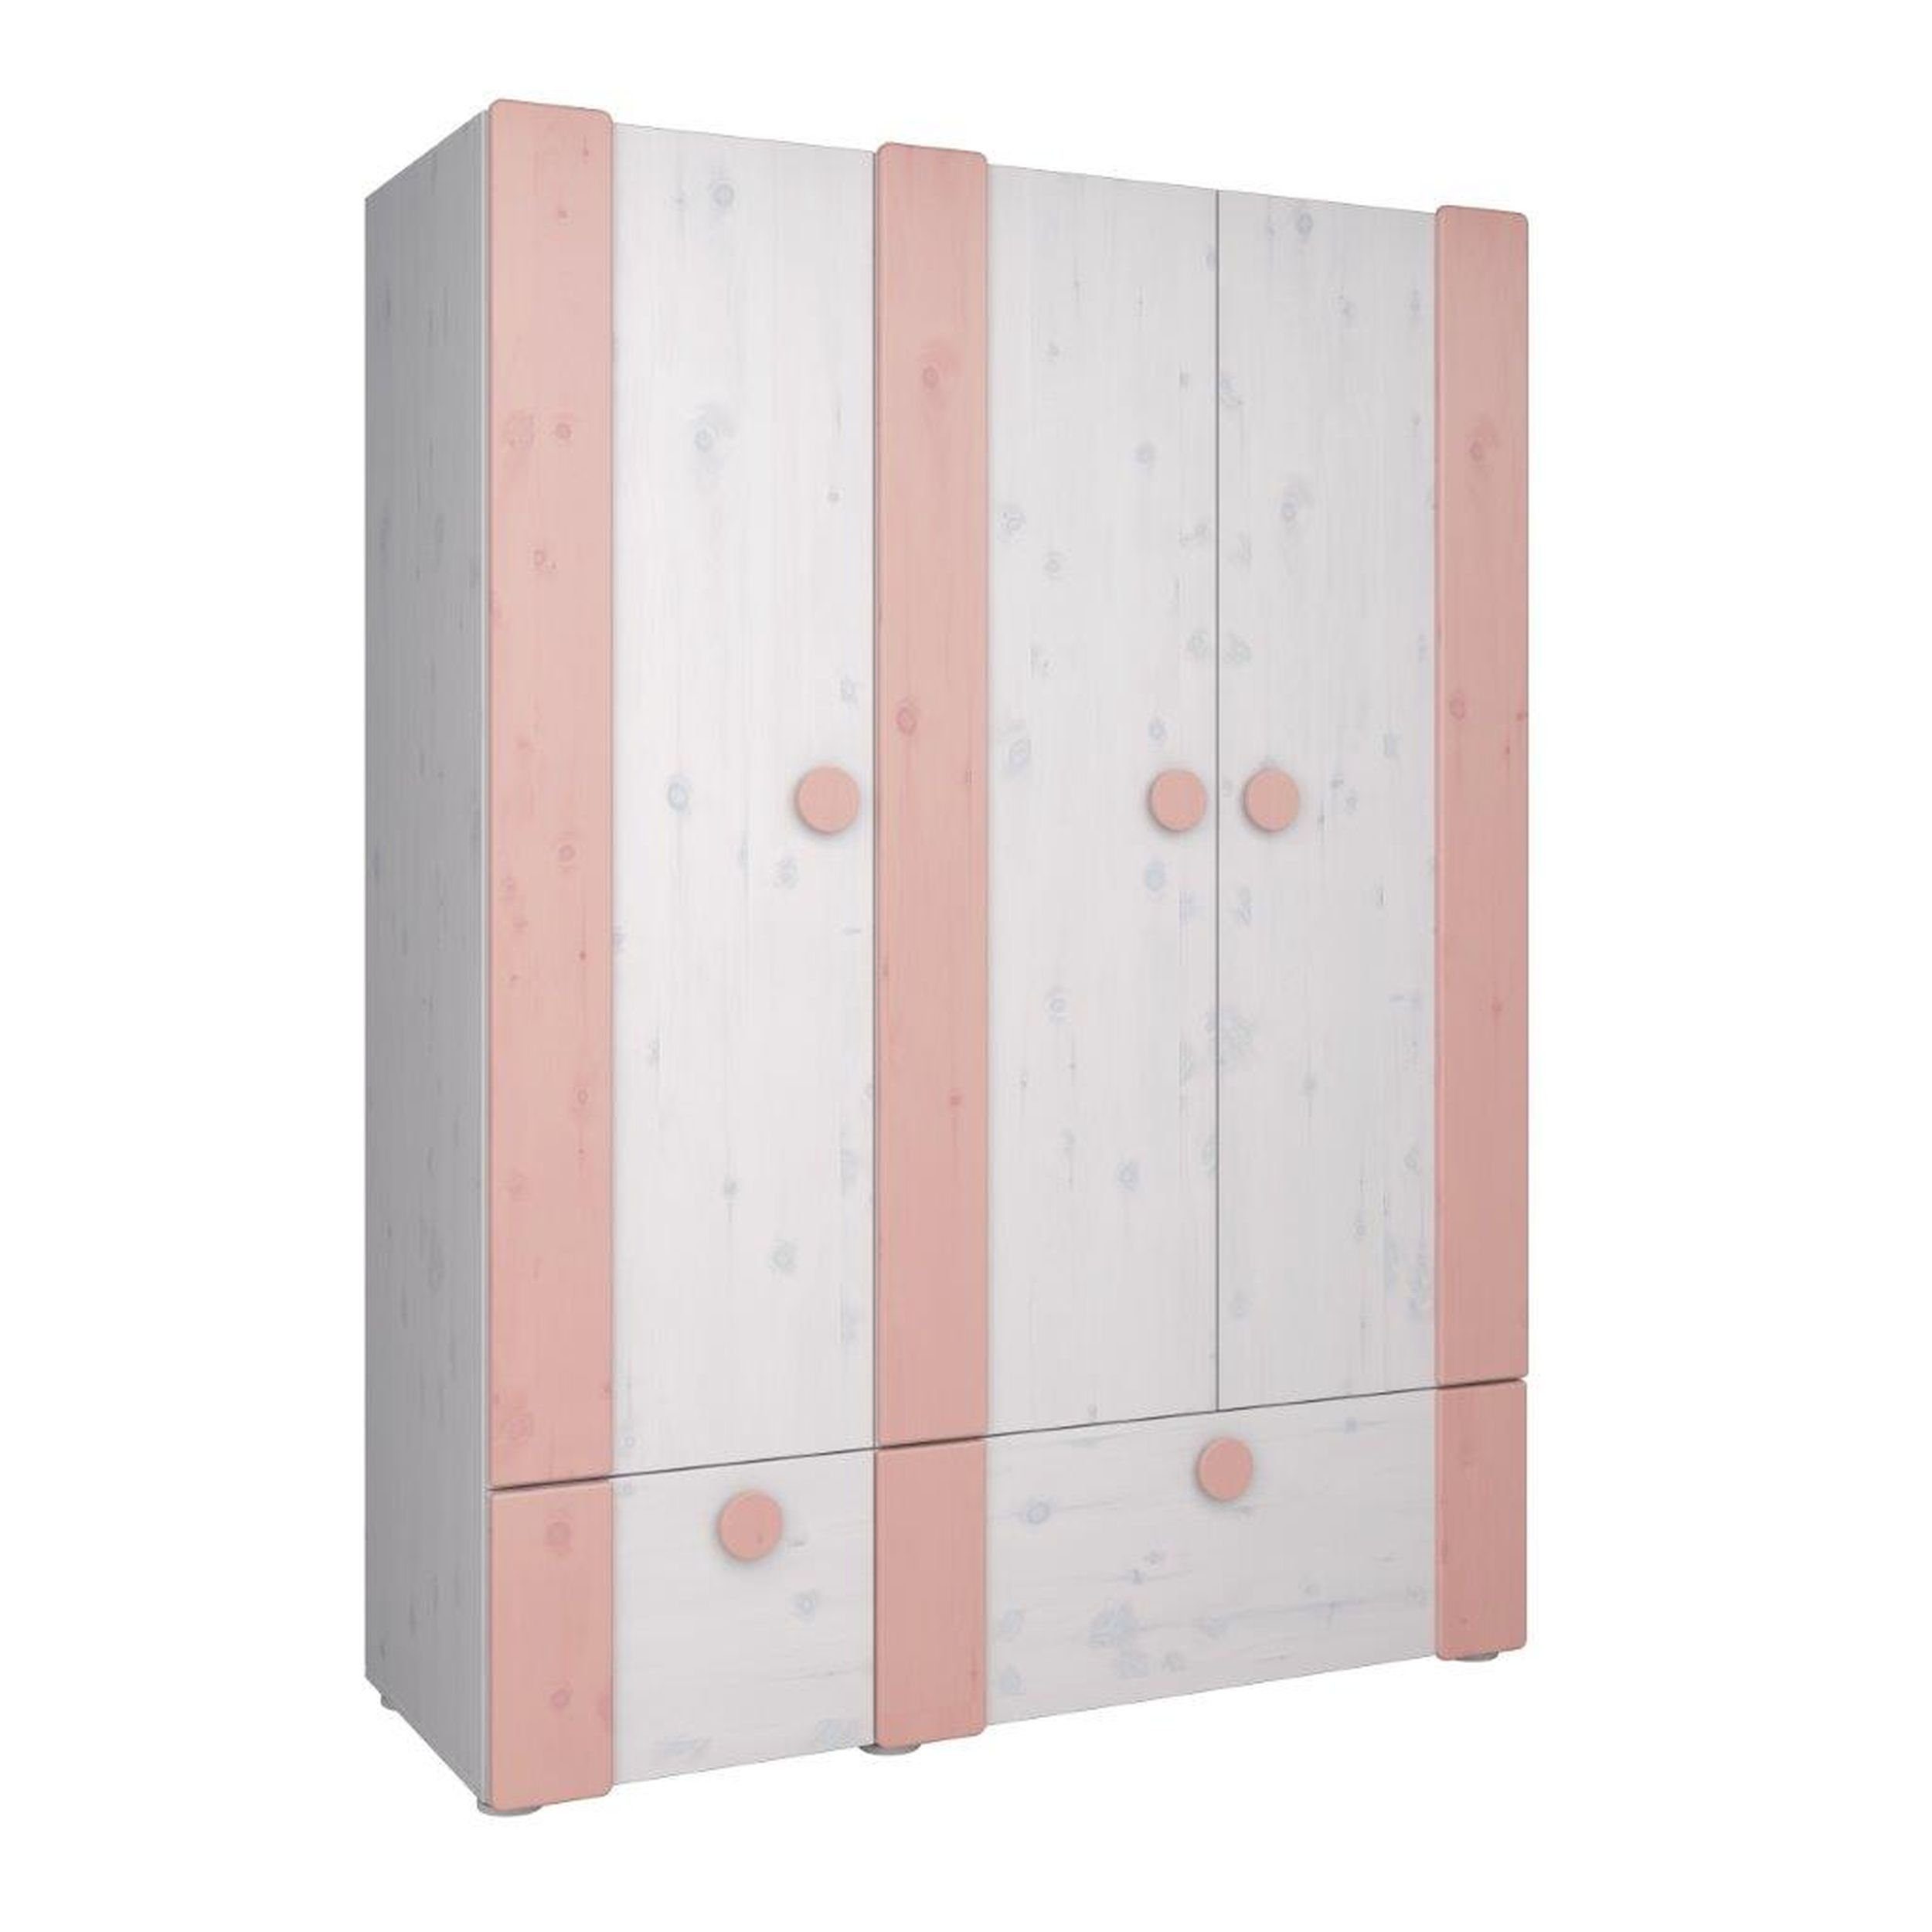 STEENS Kleiderschrank Kiefer Massiv 3-türig Kleiderschrank 150x202 cm Weiß  washed/ rosa online kaufen | OTTO